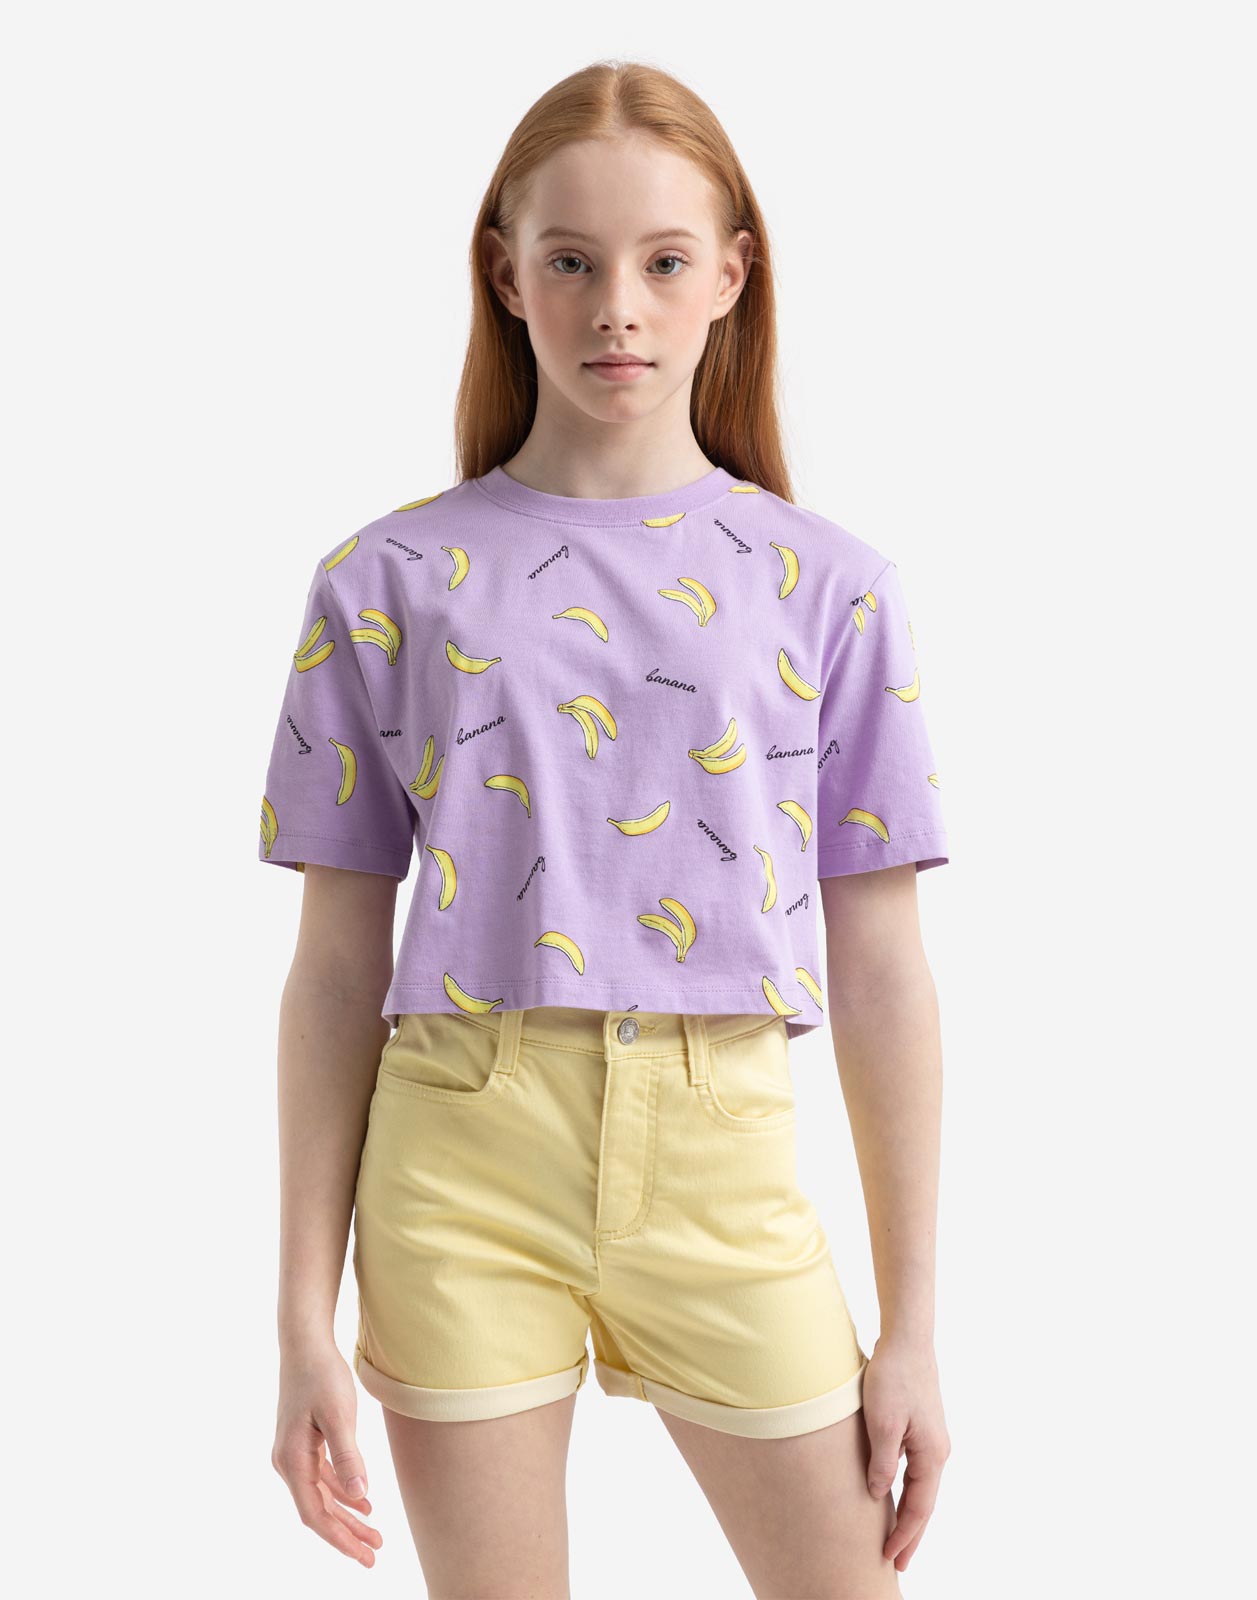 Сиреневая укороченная футболка с бананами для девочки 14+/164